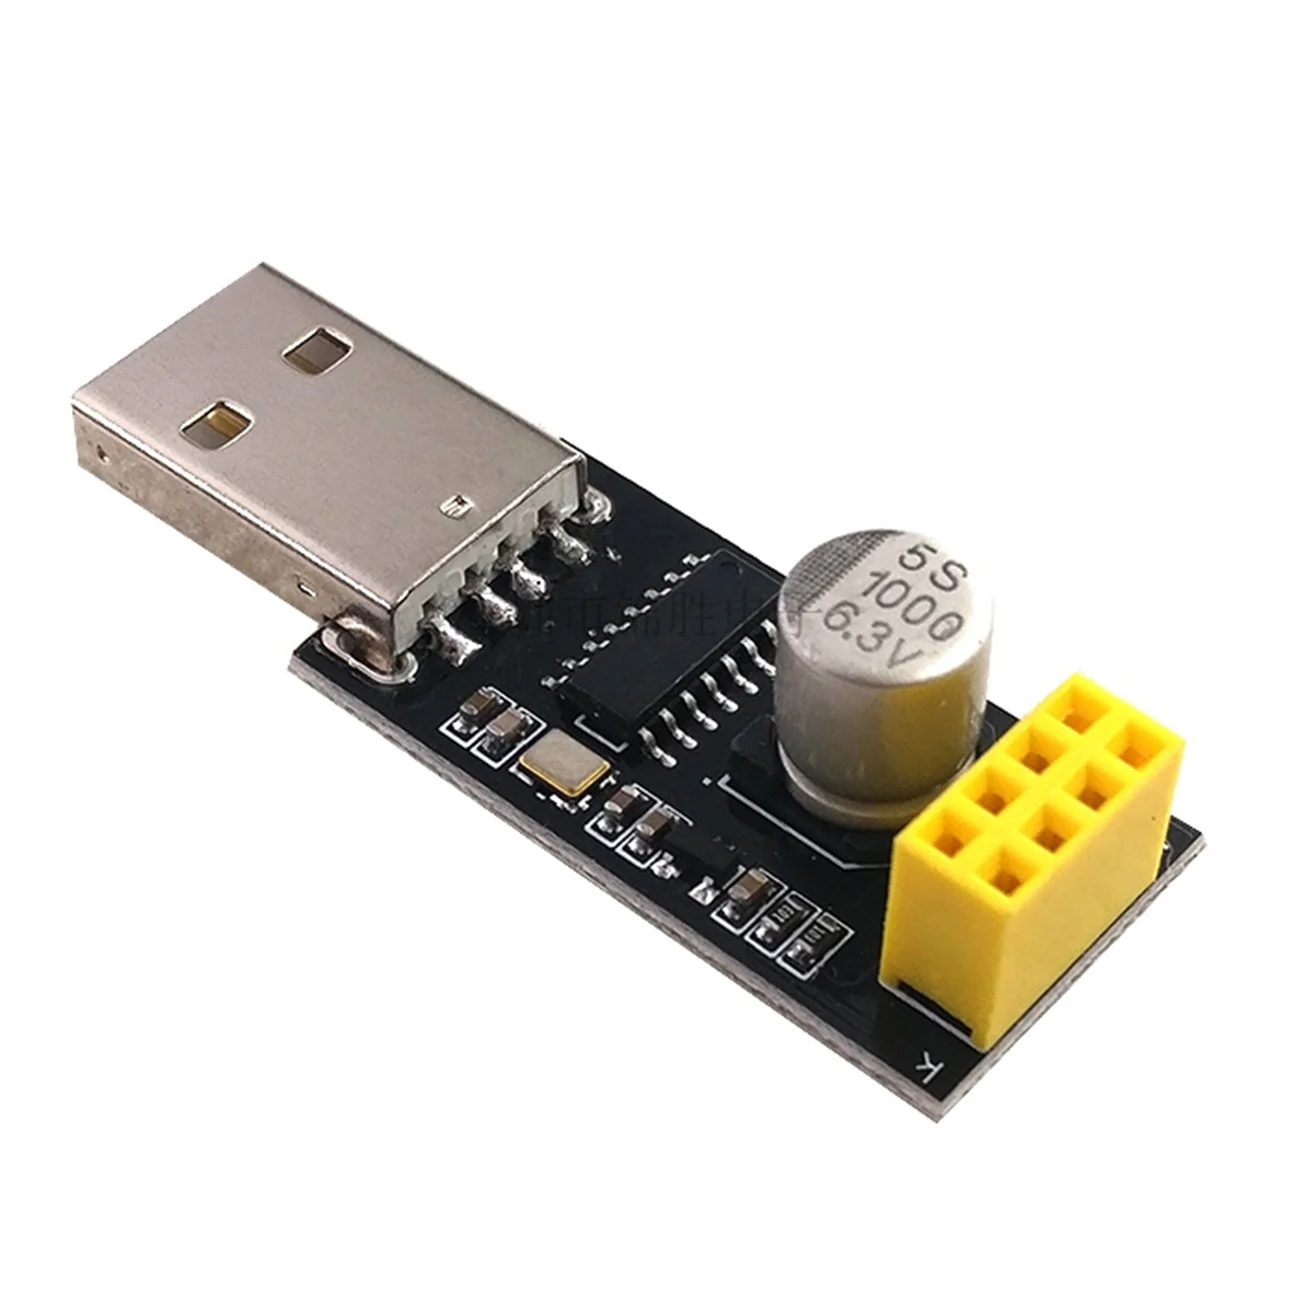 ESP01/ESP01S Programmer Adapter UART ESP-01 ESP8266 CH340G USB to Serial Wireless Wifi Developent Board Module | Электронные